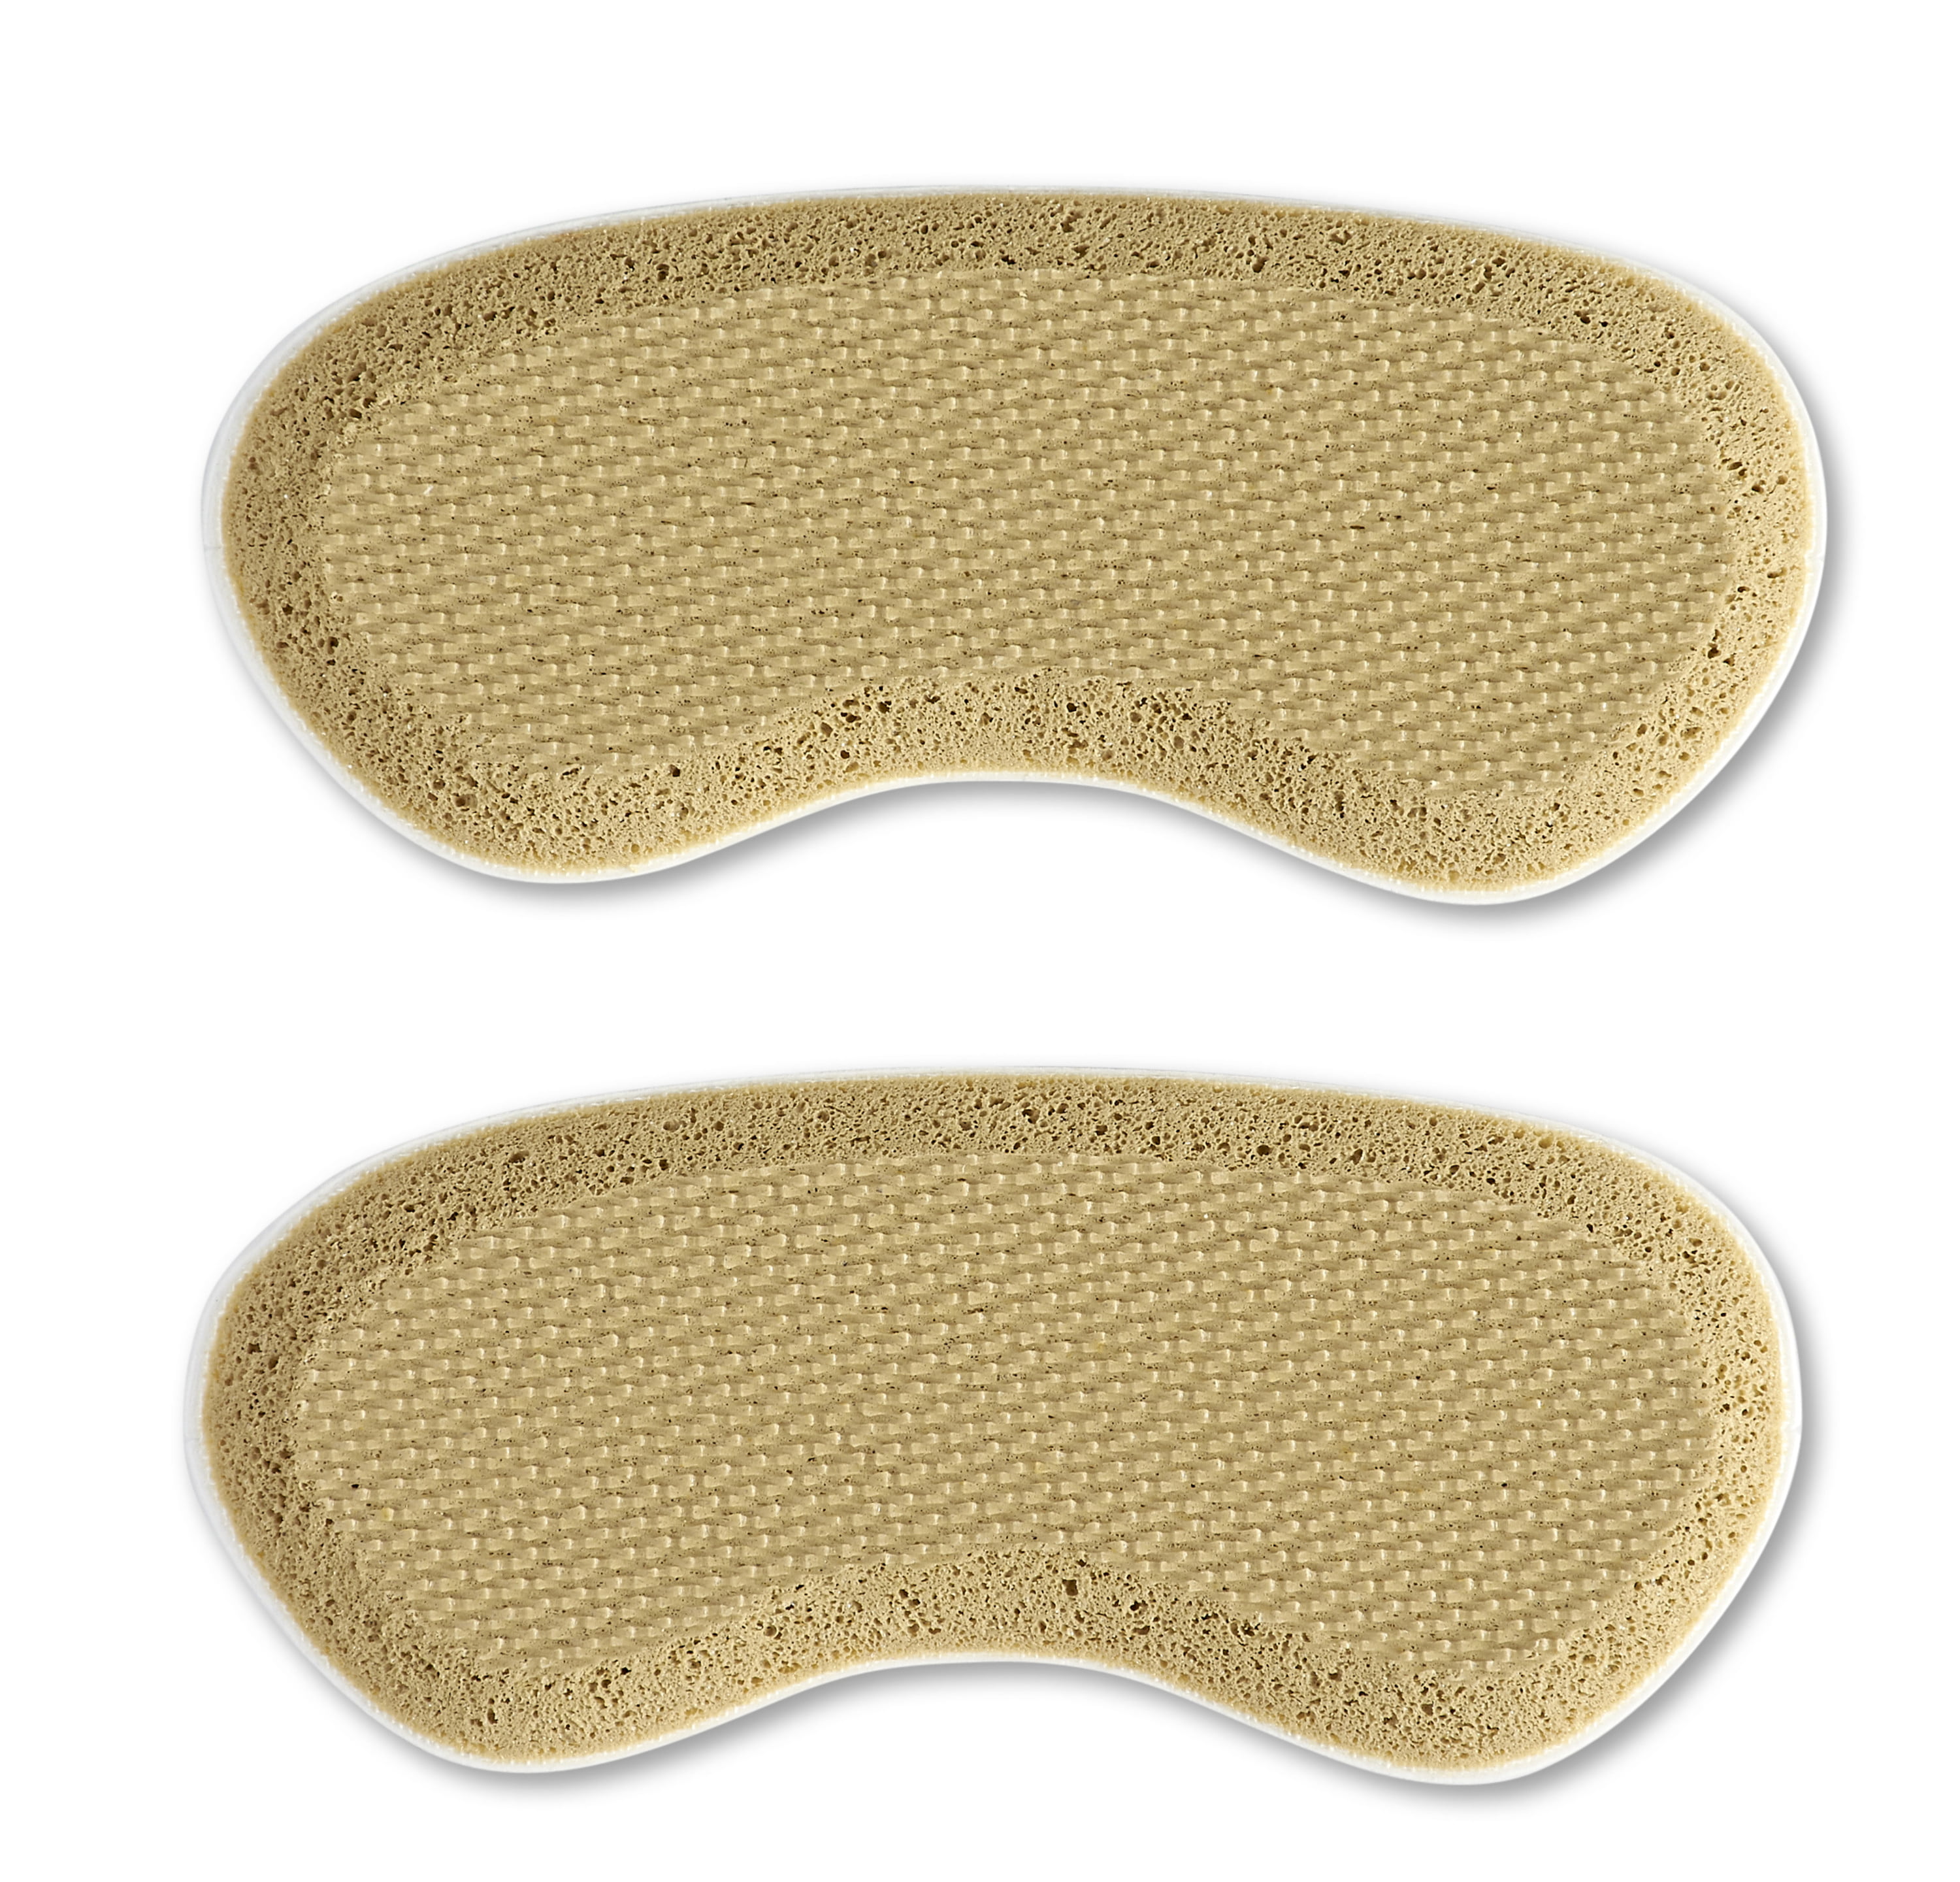 SOFCOMFORT Foam Heel Liner One Size 